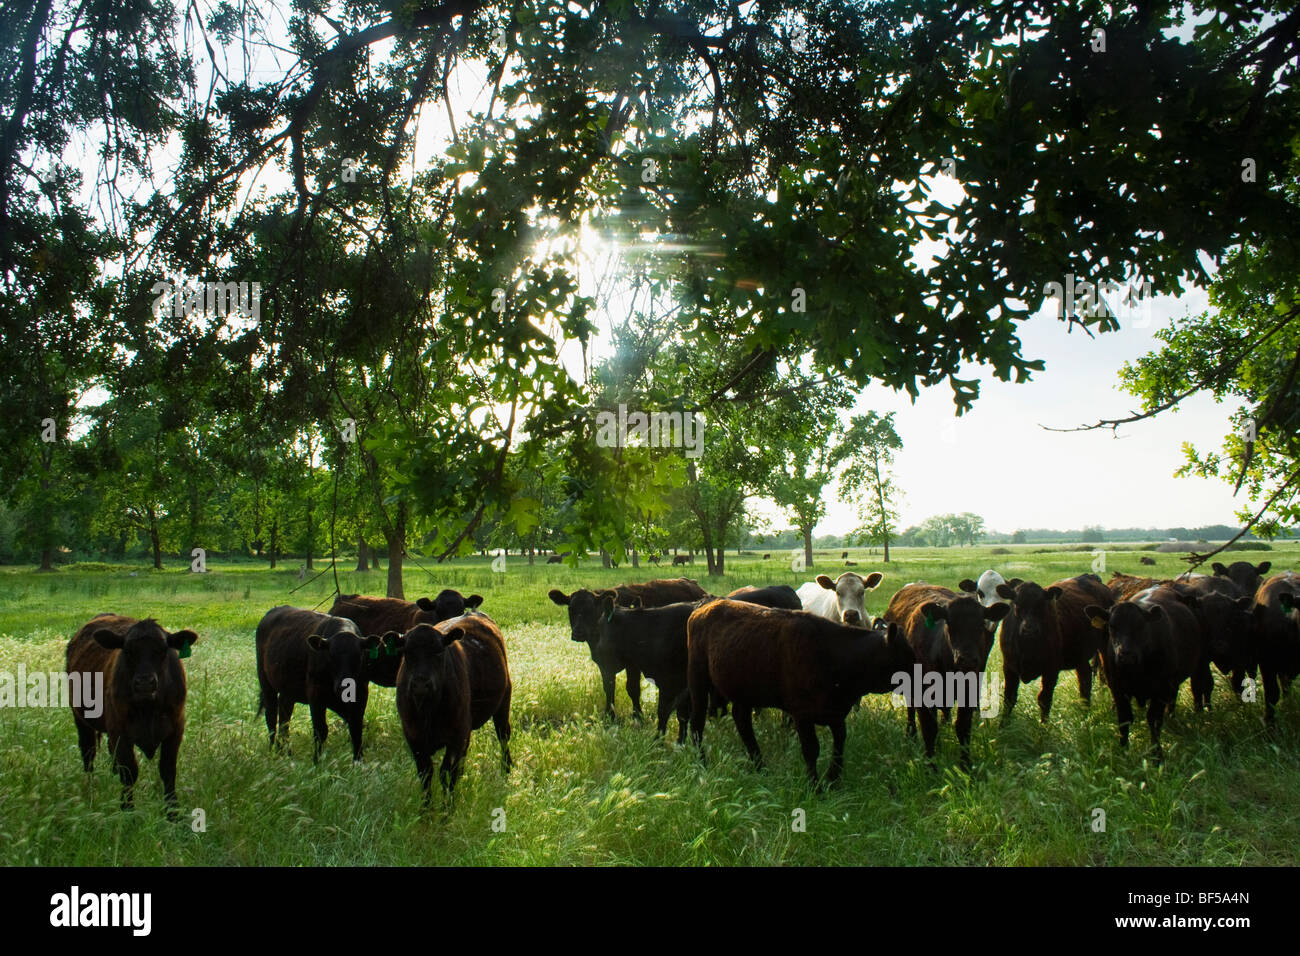 Ganadería - mezcla de razas de ganado vacuno, principalmente el Black Angus, sobre una pastura verde / cerca de Vina, California, USA. Foto de stock